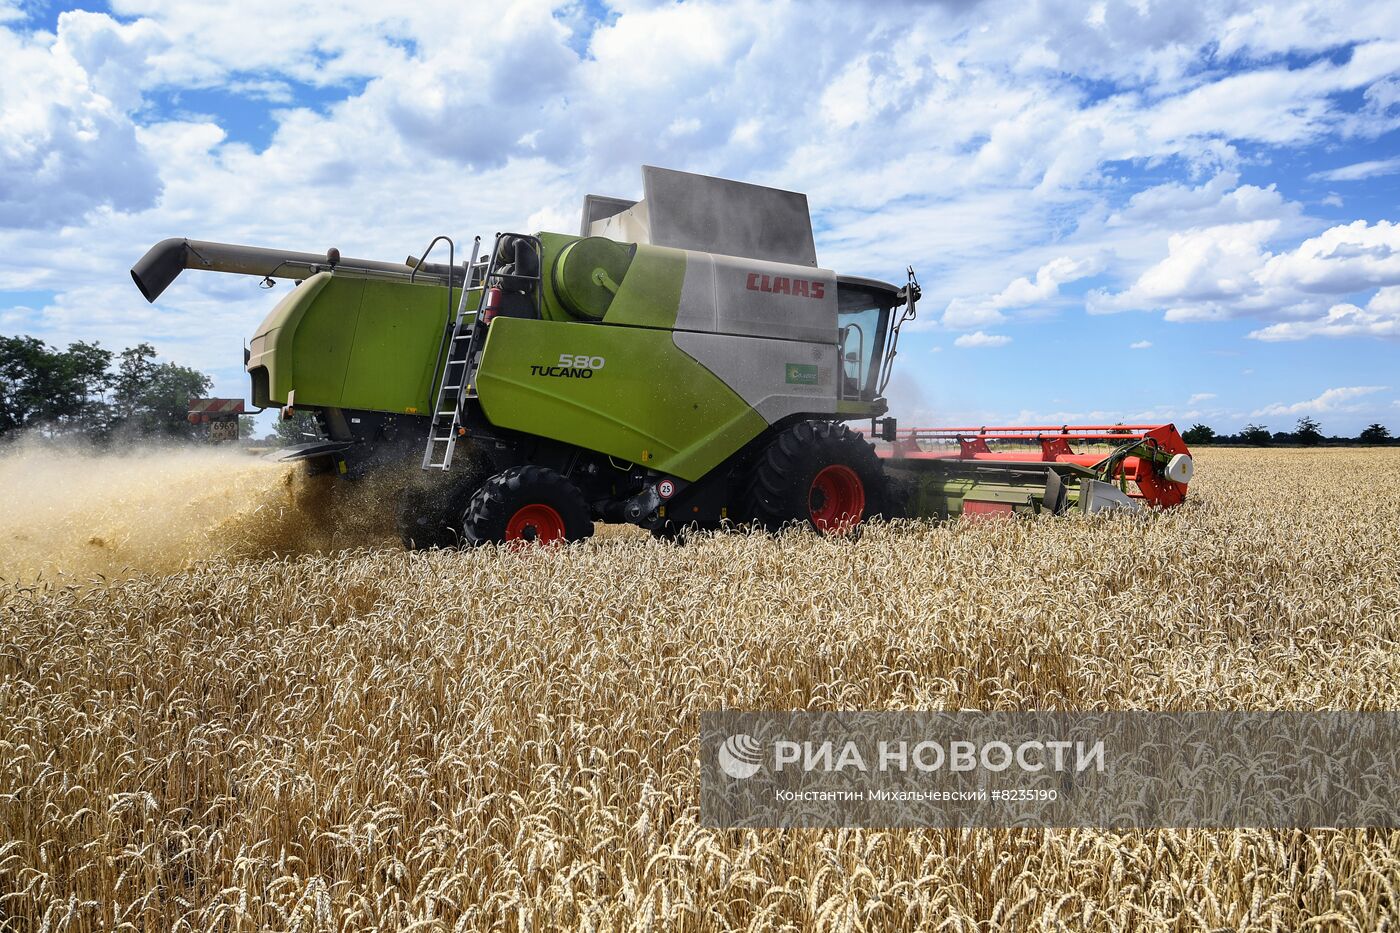 Уборка урожая пшеницы в Крыму